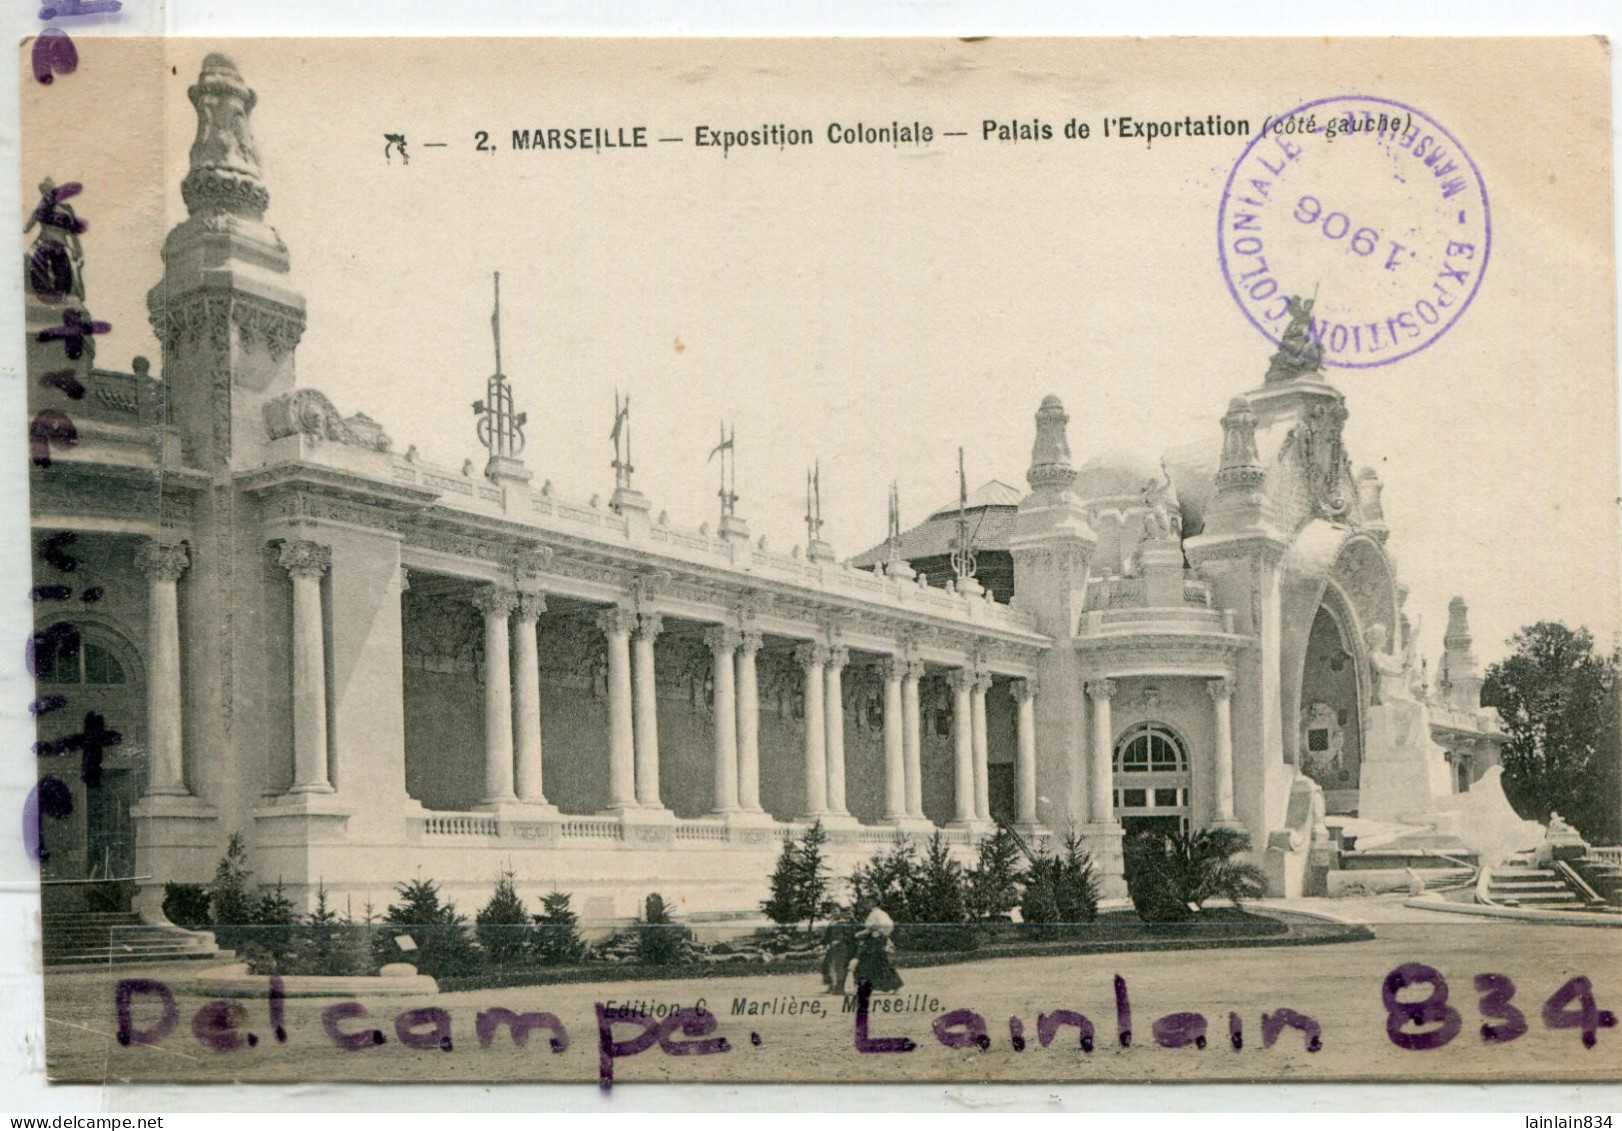 - 2 - MARSEILLE - Exposition Coloniale, 1906, Pavillon Colonial, Palais De L'Exportation, Côté Gauche, TTBE, Scans. - Colonial Exhibitions 1906 - 1922